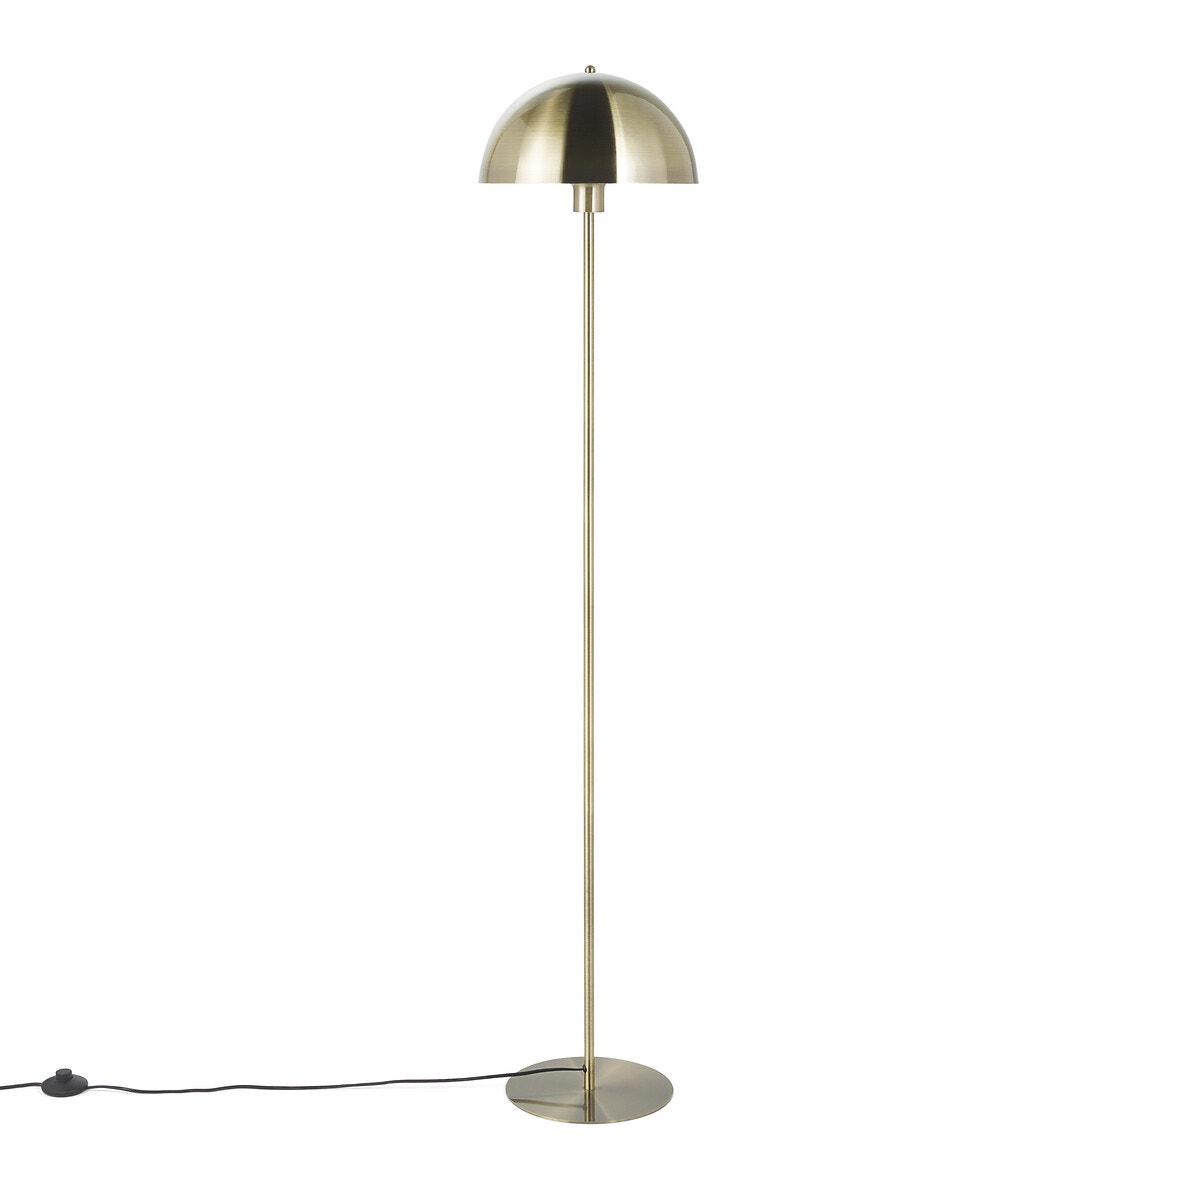 Capi Articulated Floor Lamp